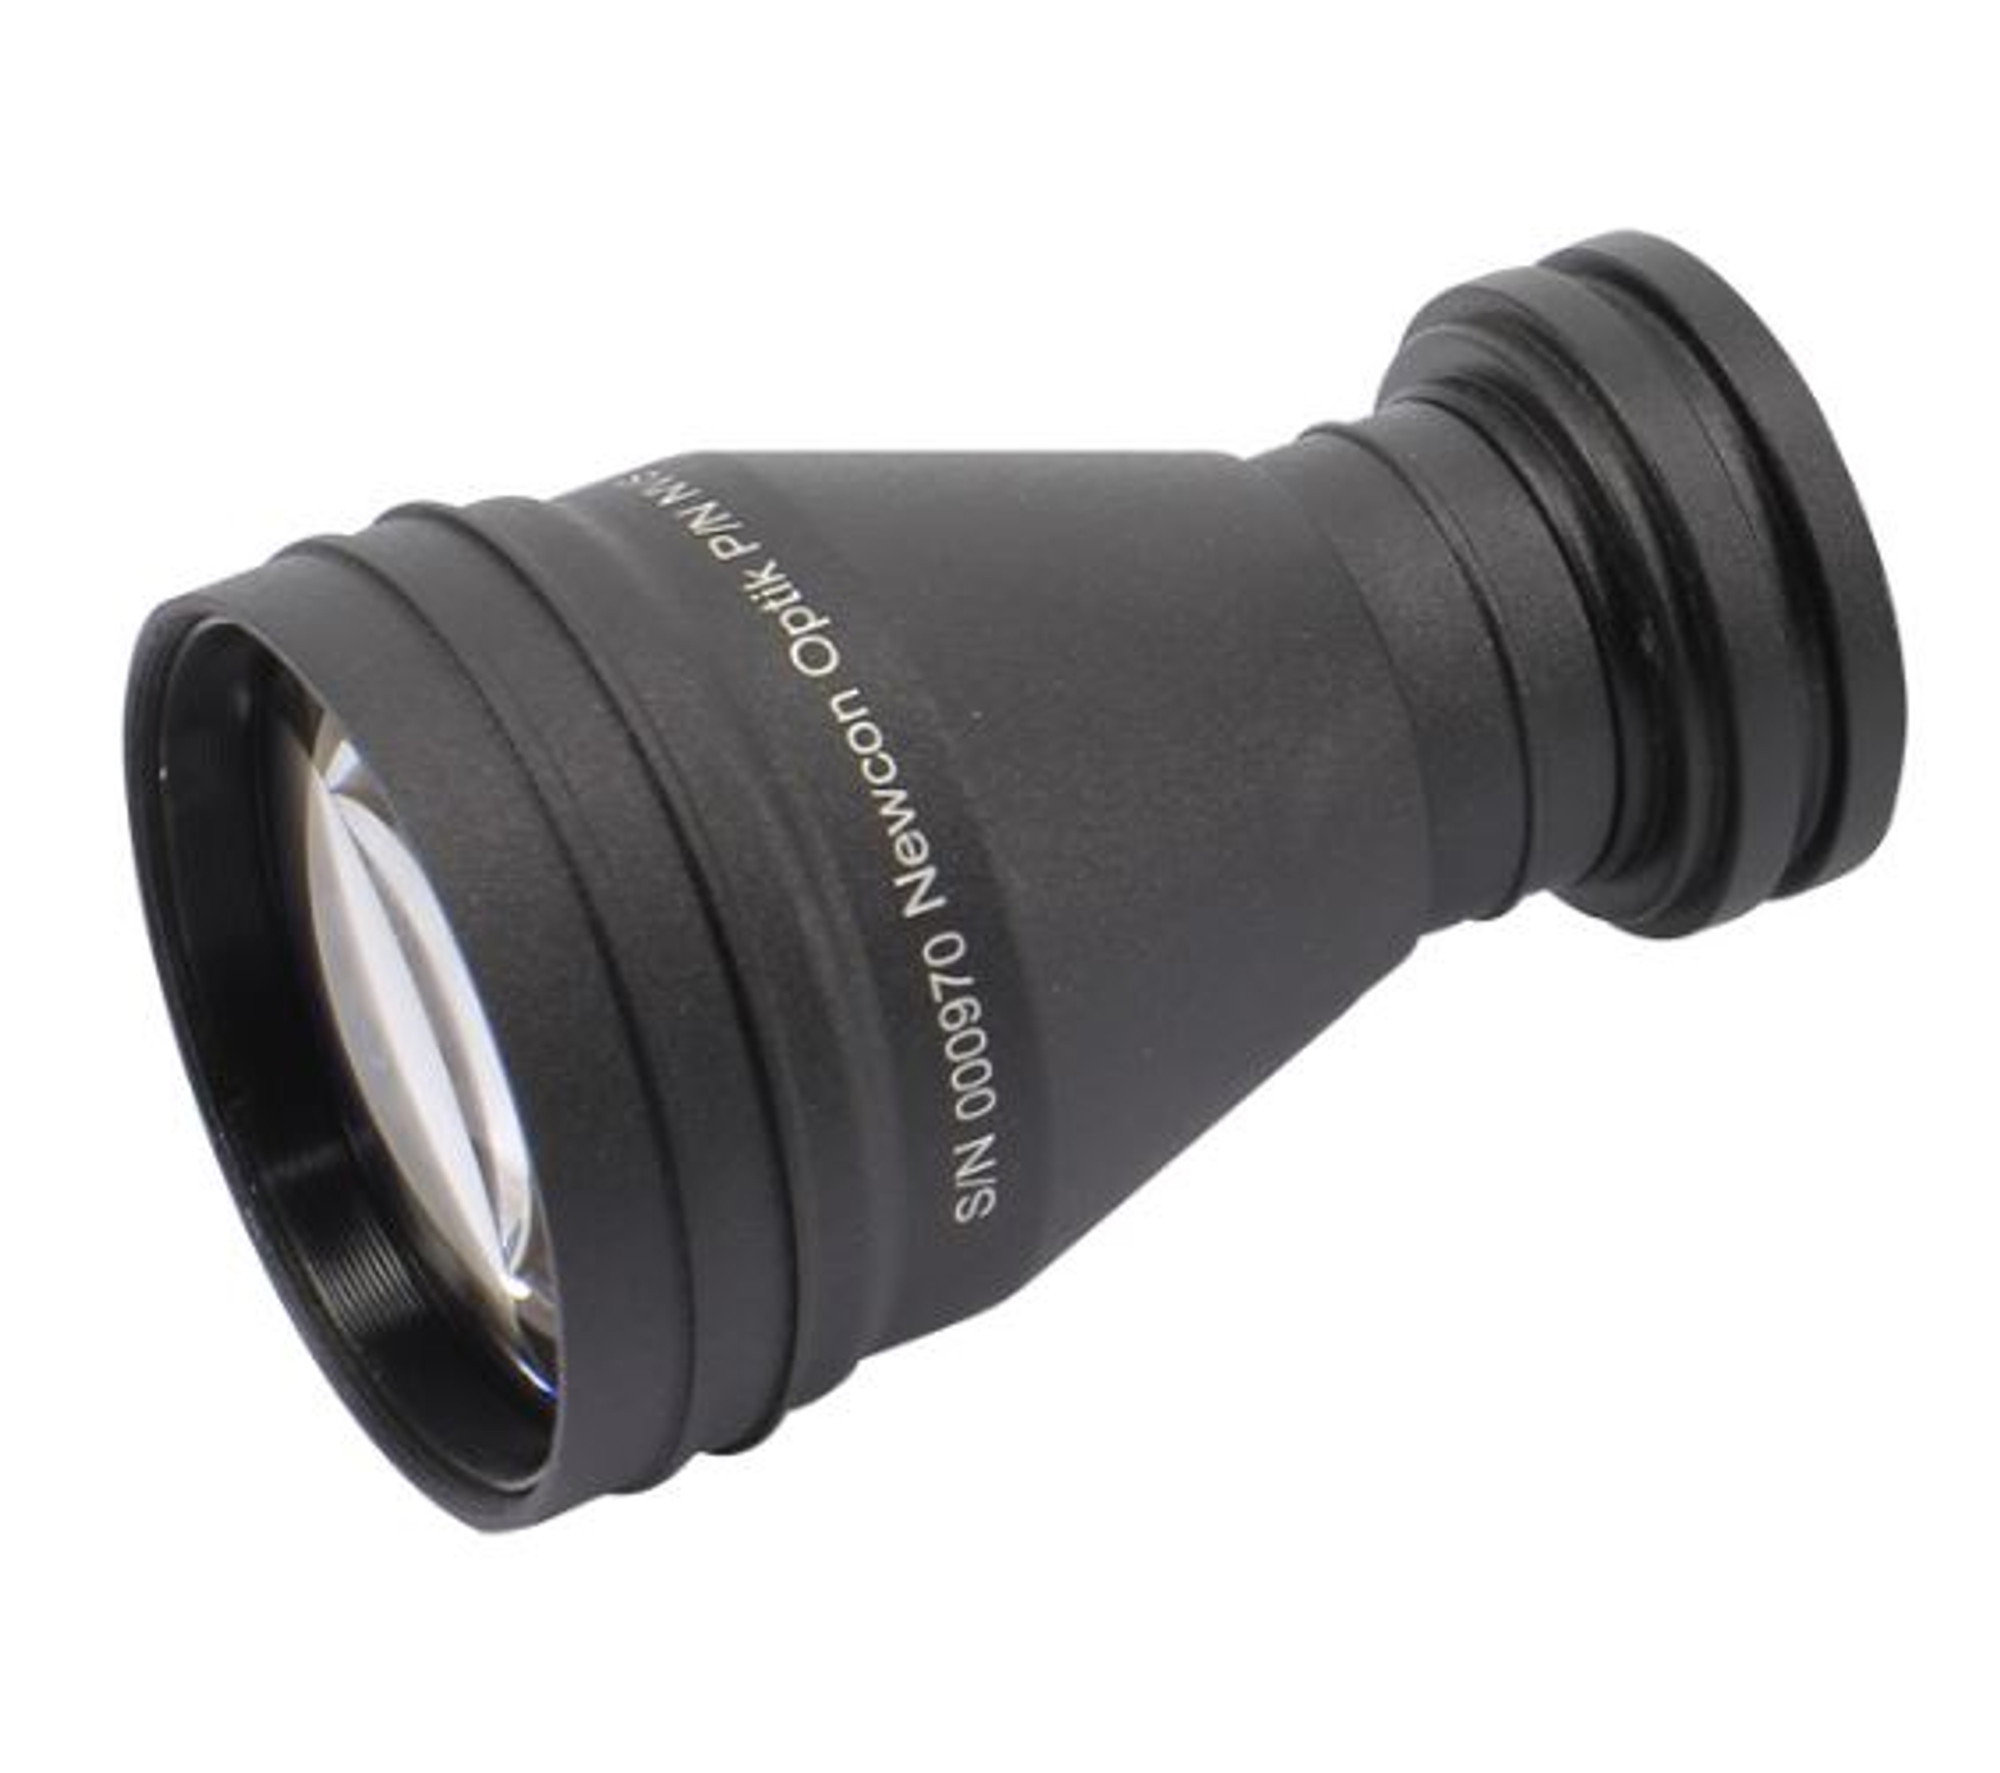 Newcon Optik 3x Afocal Lens for NVS 7 / NVS 14 models